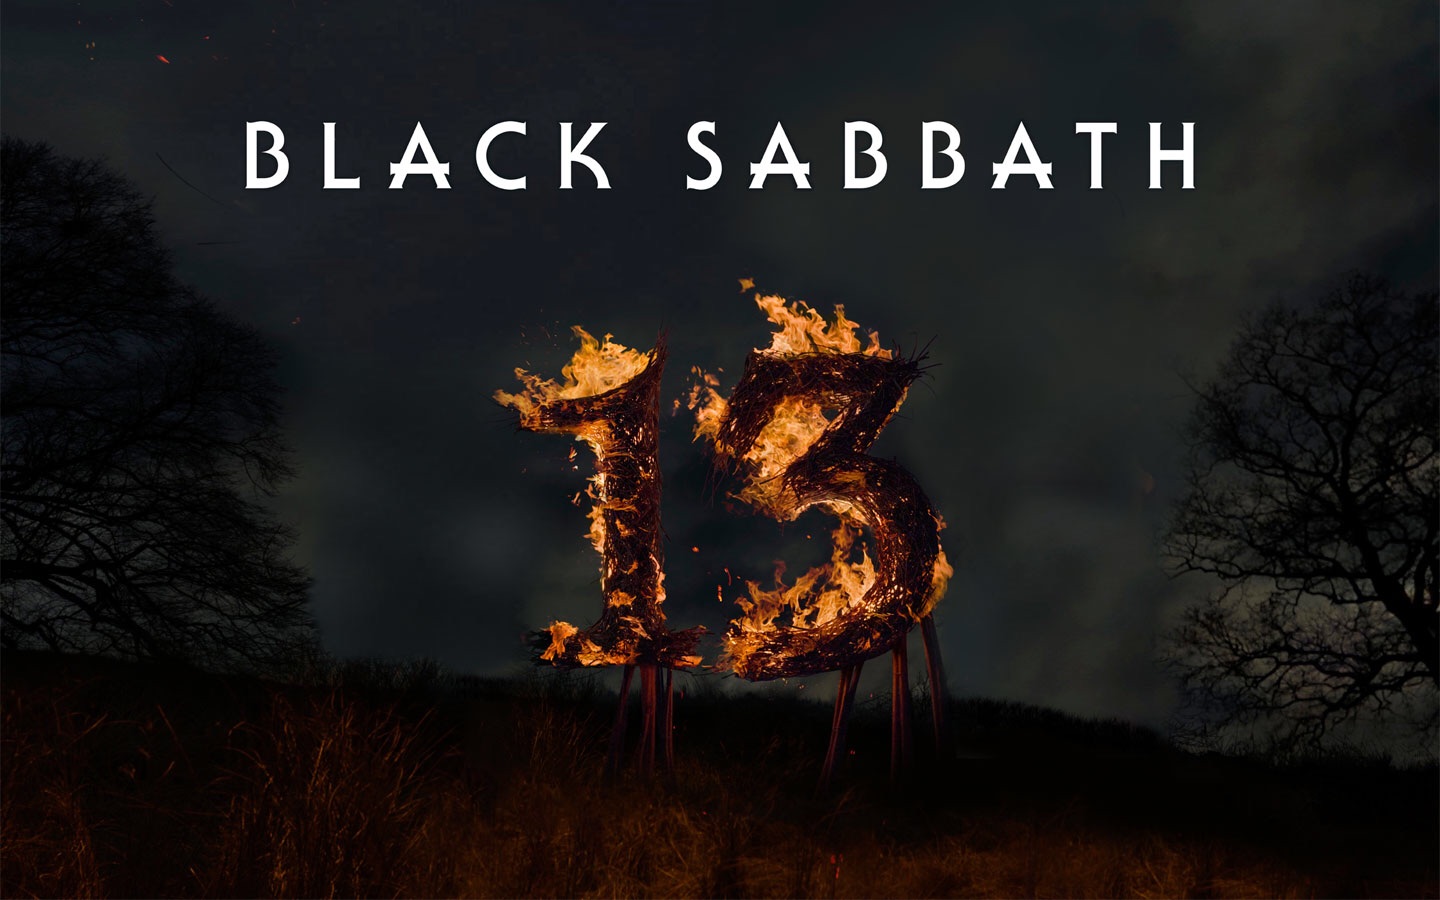 Black Sabbath Wallpaper - Black Sabbath 13 , HD Wallpaper & Backgrounds